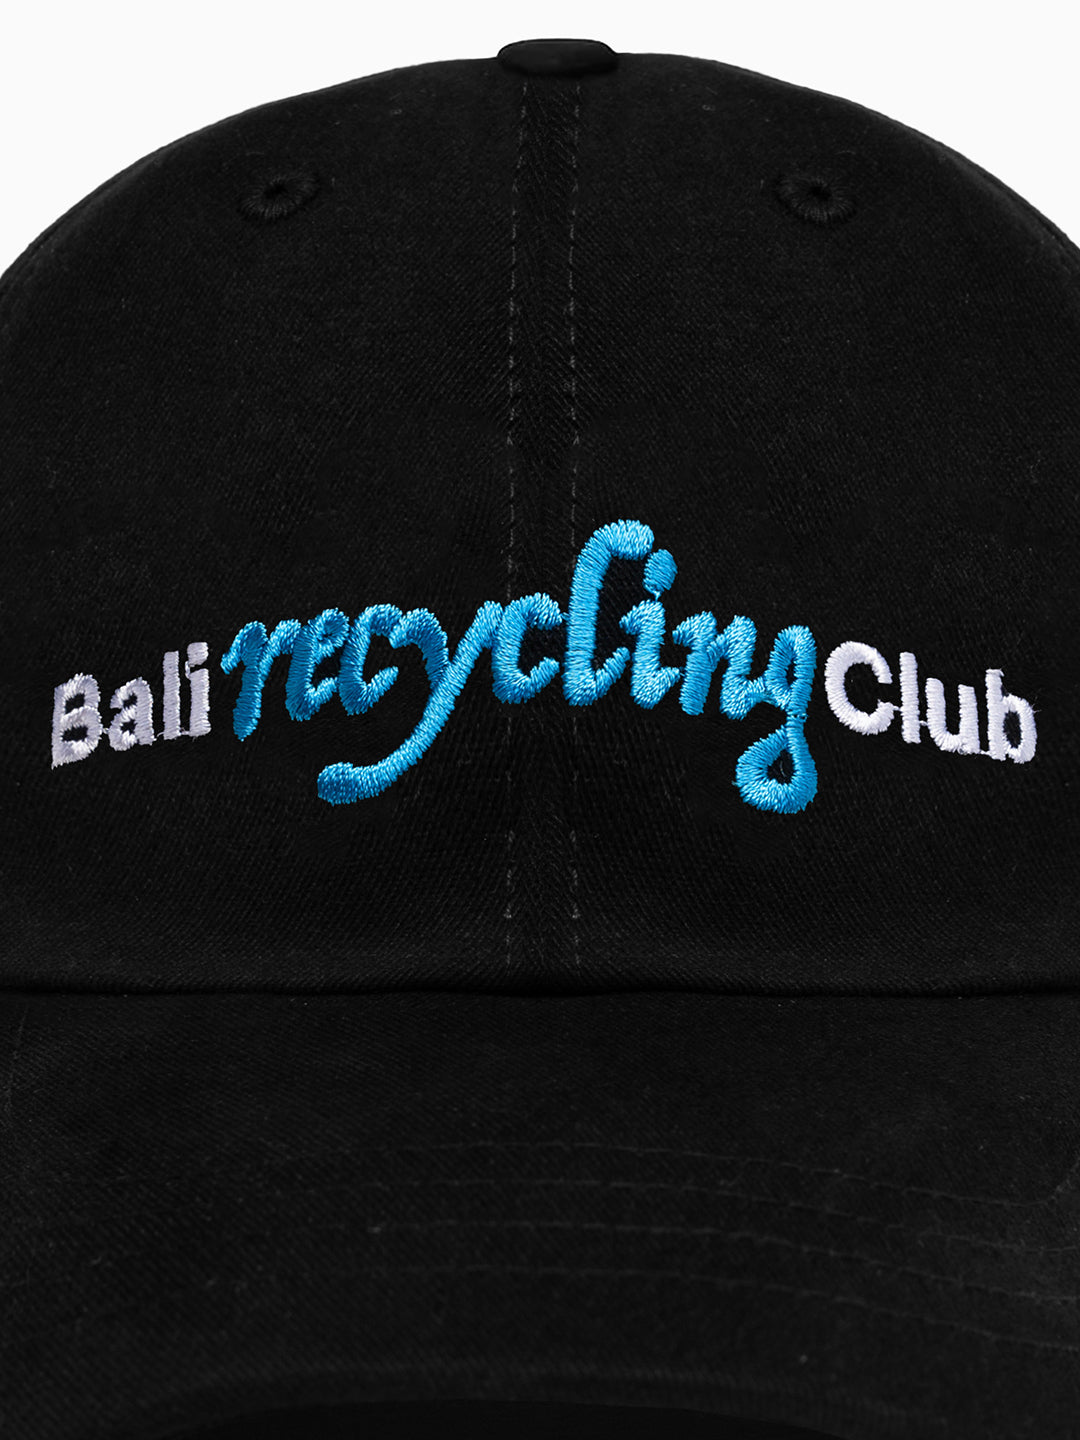 Bali Recycling Club Cap Black